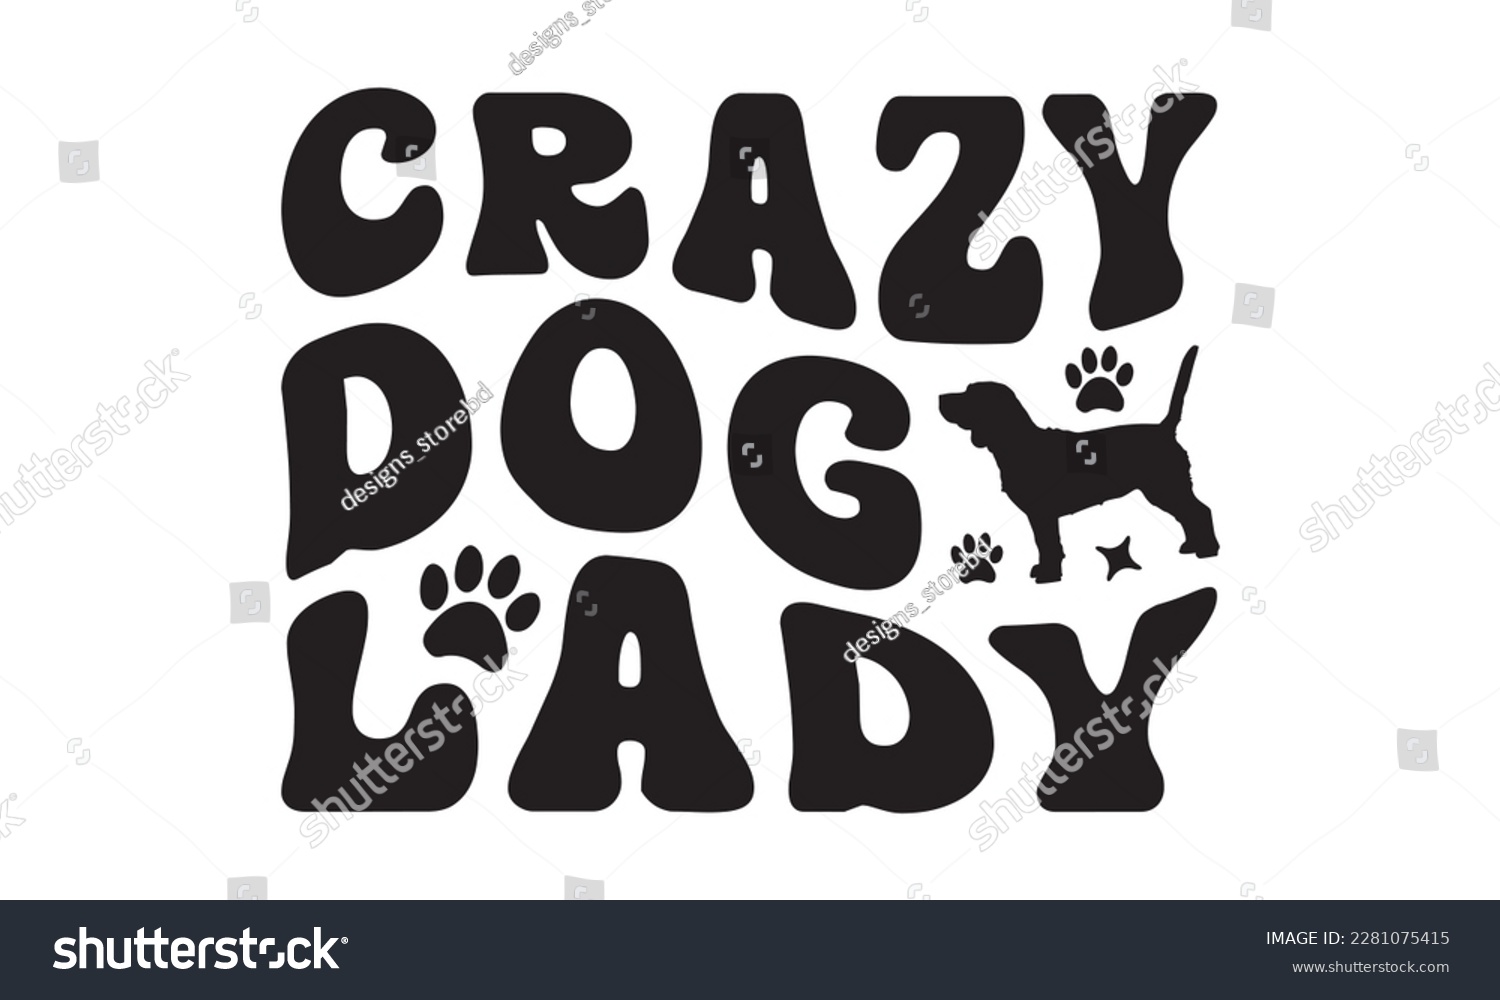 SVG of Crazy dog lady svg ,dog SVG Bundle, dog SVG design bundle and  t-shirt design, Funny Dog Quotes SVG Designs and cut files, fur mom, animal design, animal lover svg